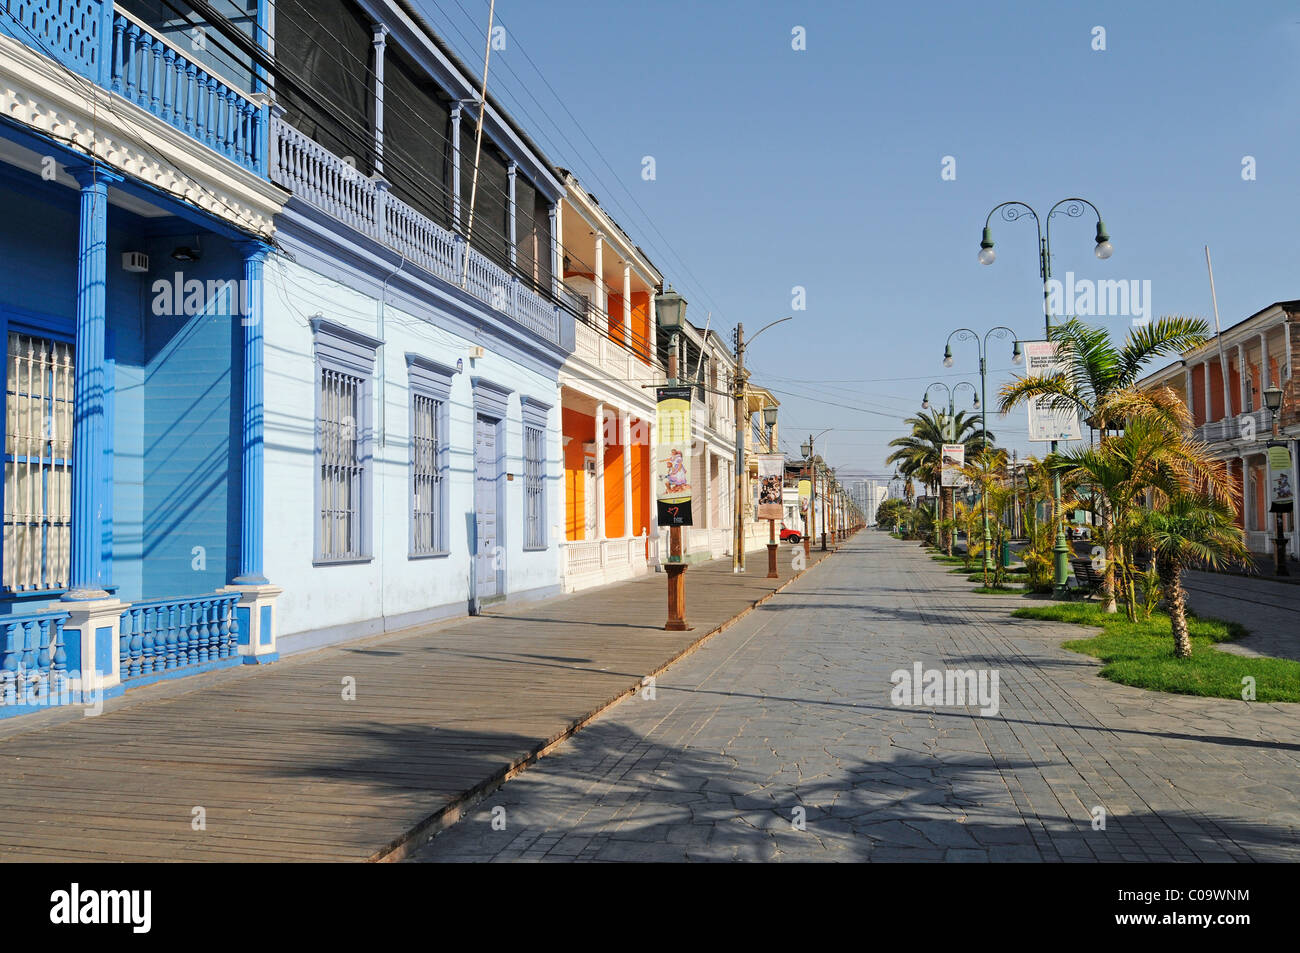 Avenida Baquedano, bâtiments historiques, maisons en bois coloré avec des porches, Iquique, Norte Grande, le nord du Chili, Chili Banque D'Images